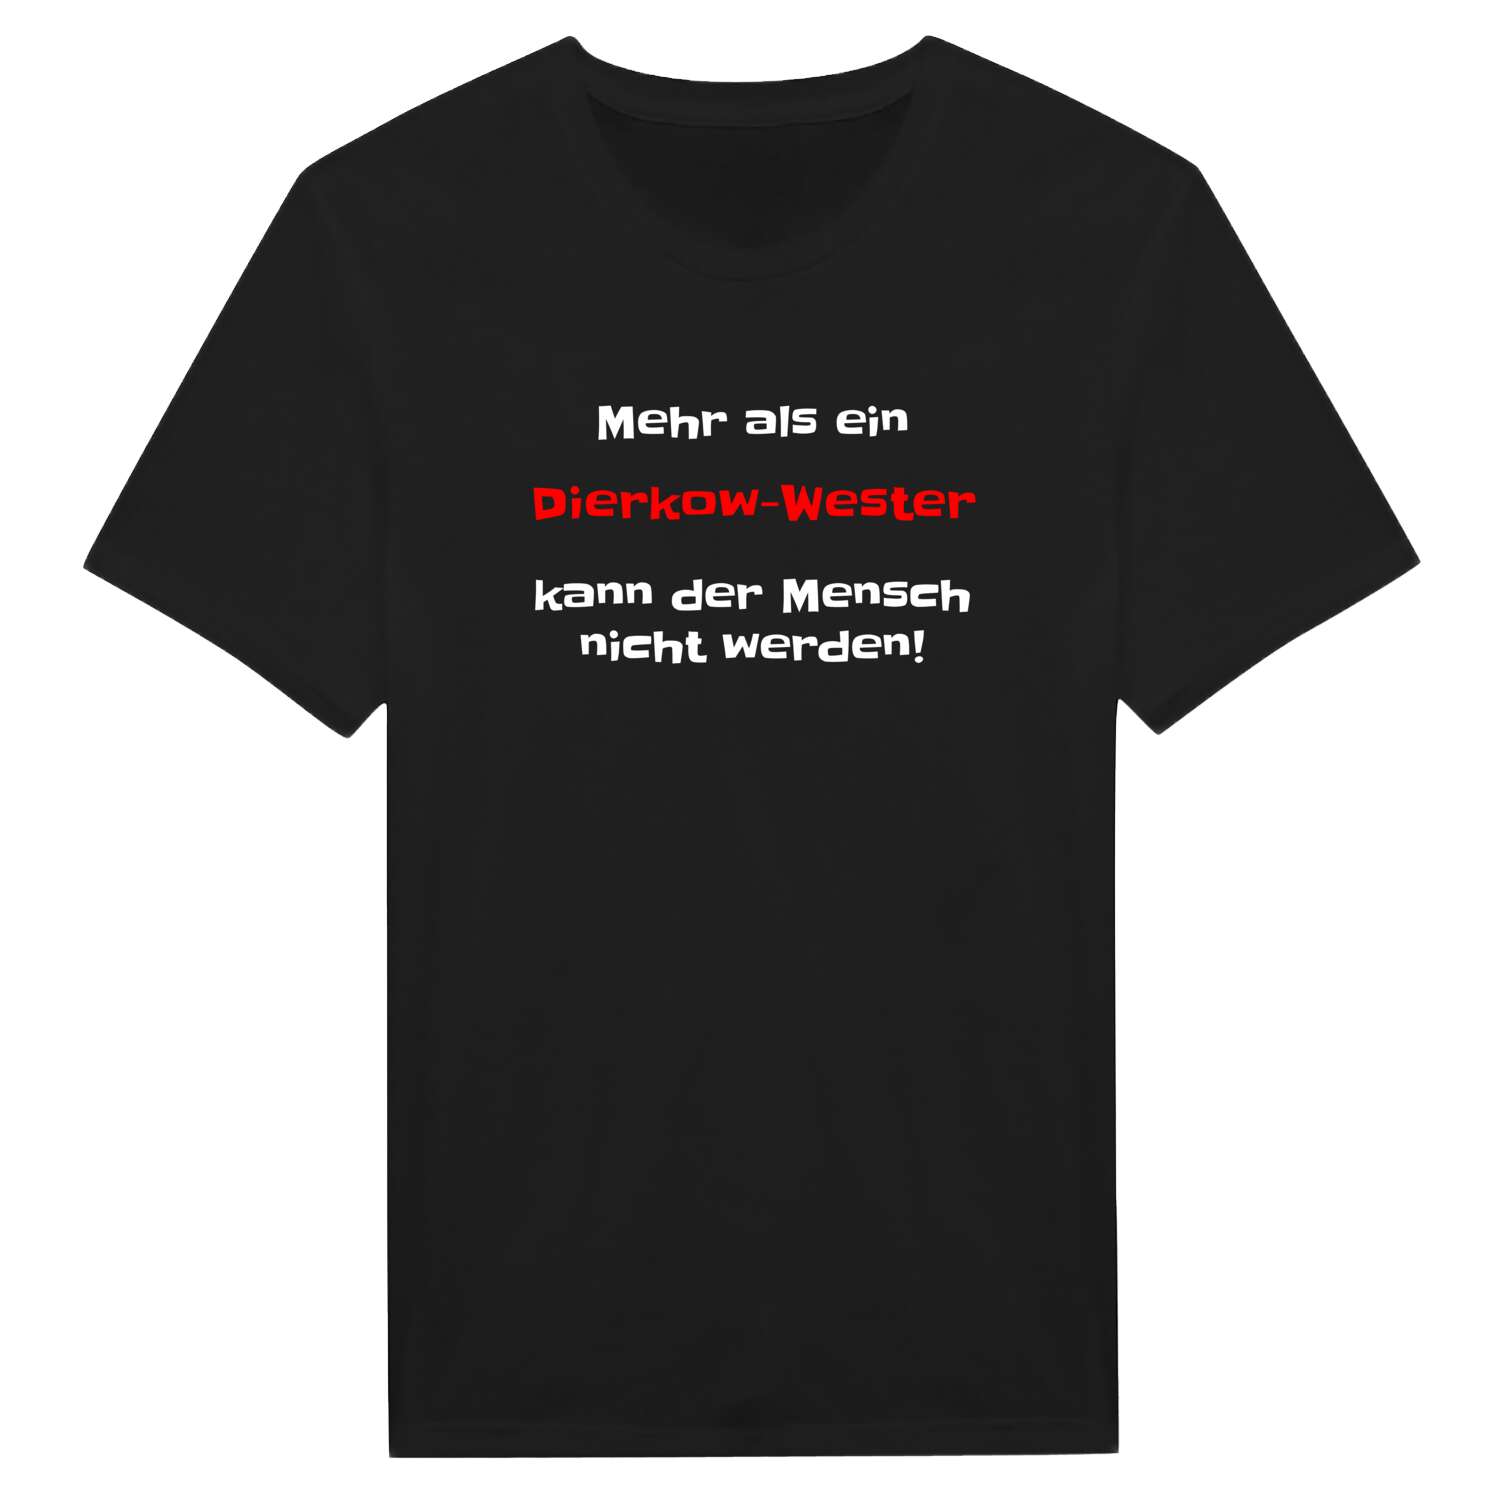 Dierkow-West T-Shirt »Mehr als ein«